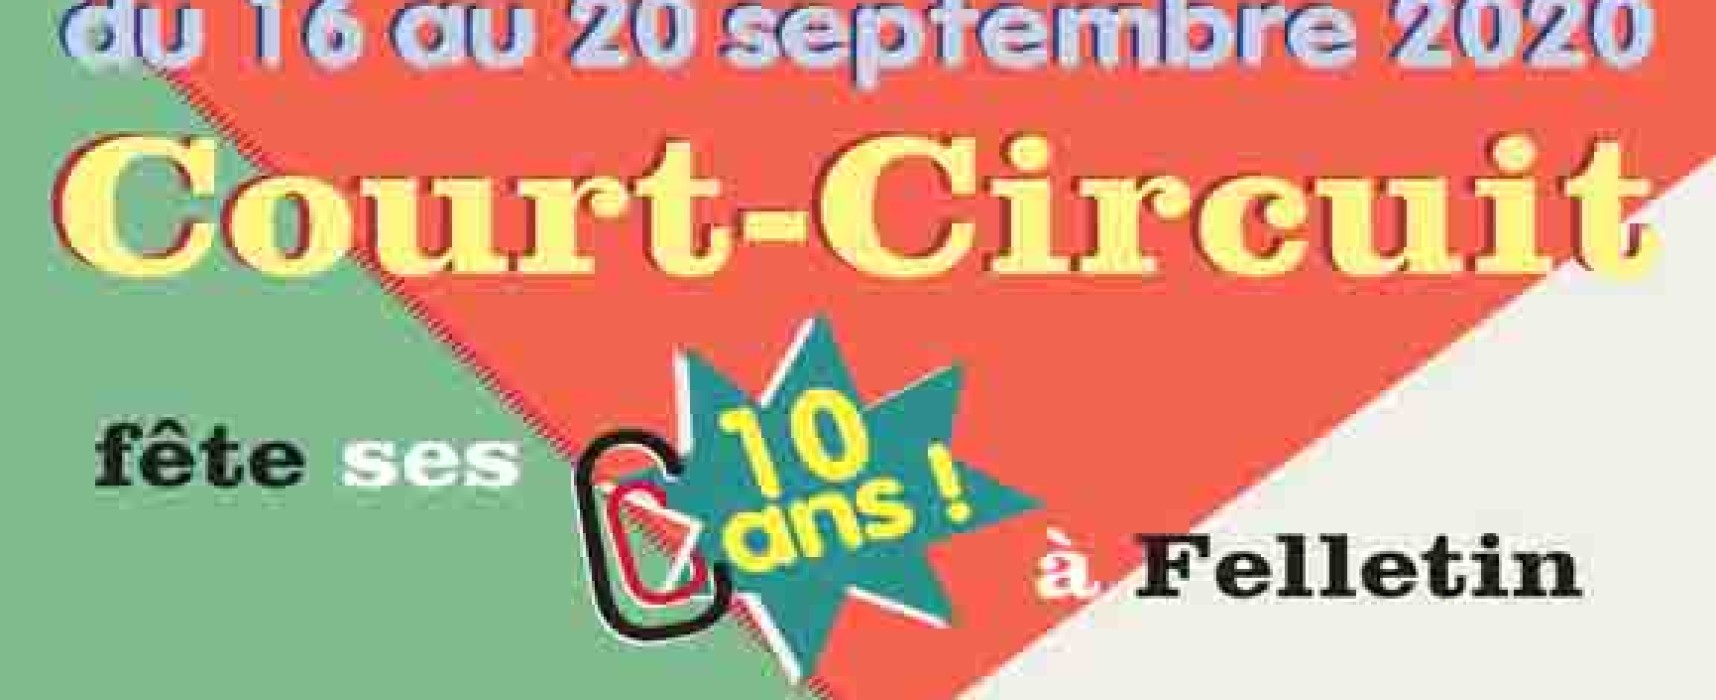 L’association Court-Circuit fête ses 10 ans du 16 au 20 septembre 2020